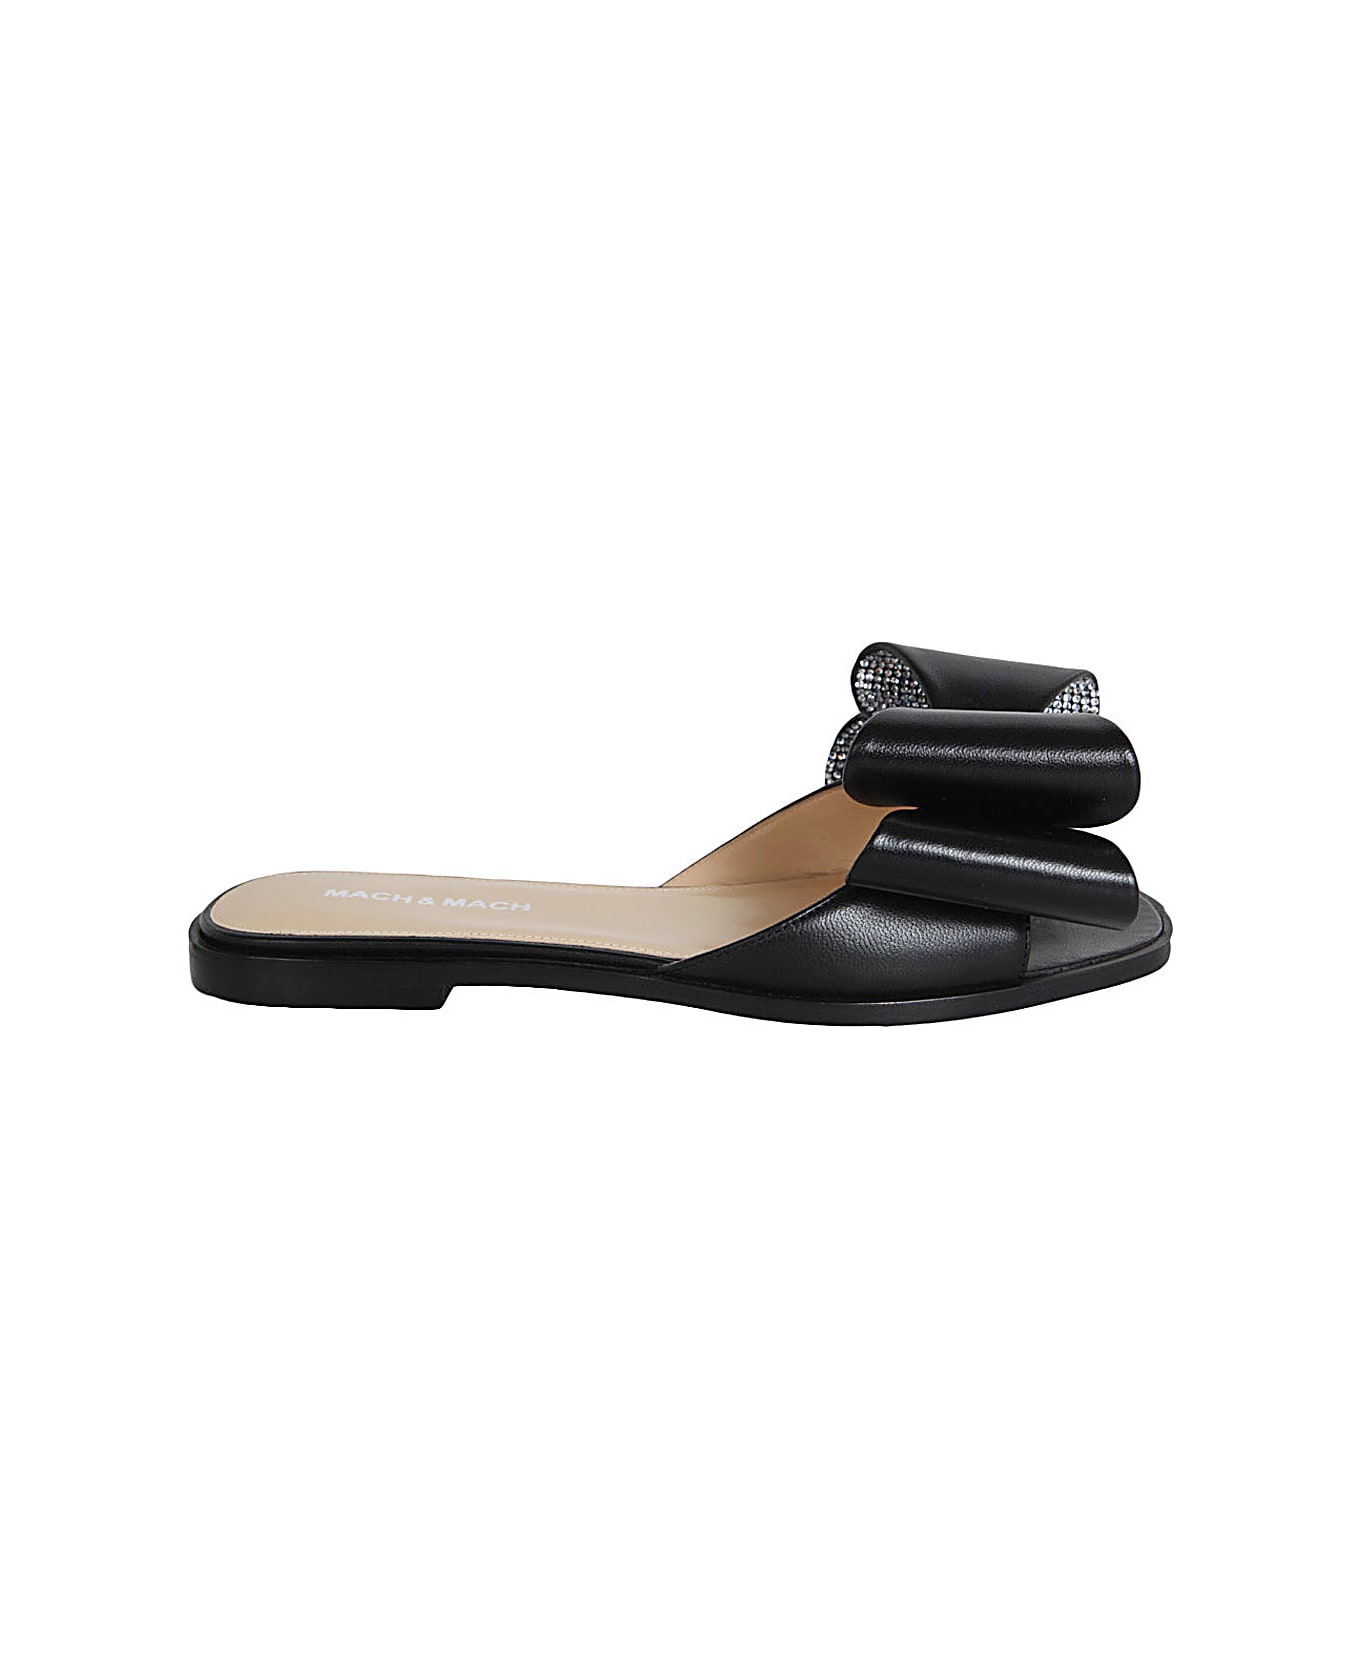 Mach & Mach Cadeau Nappa Leather Flat Sandal - Black サンダル